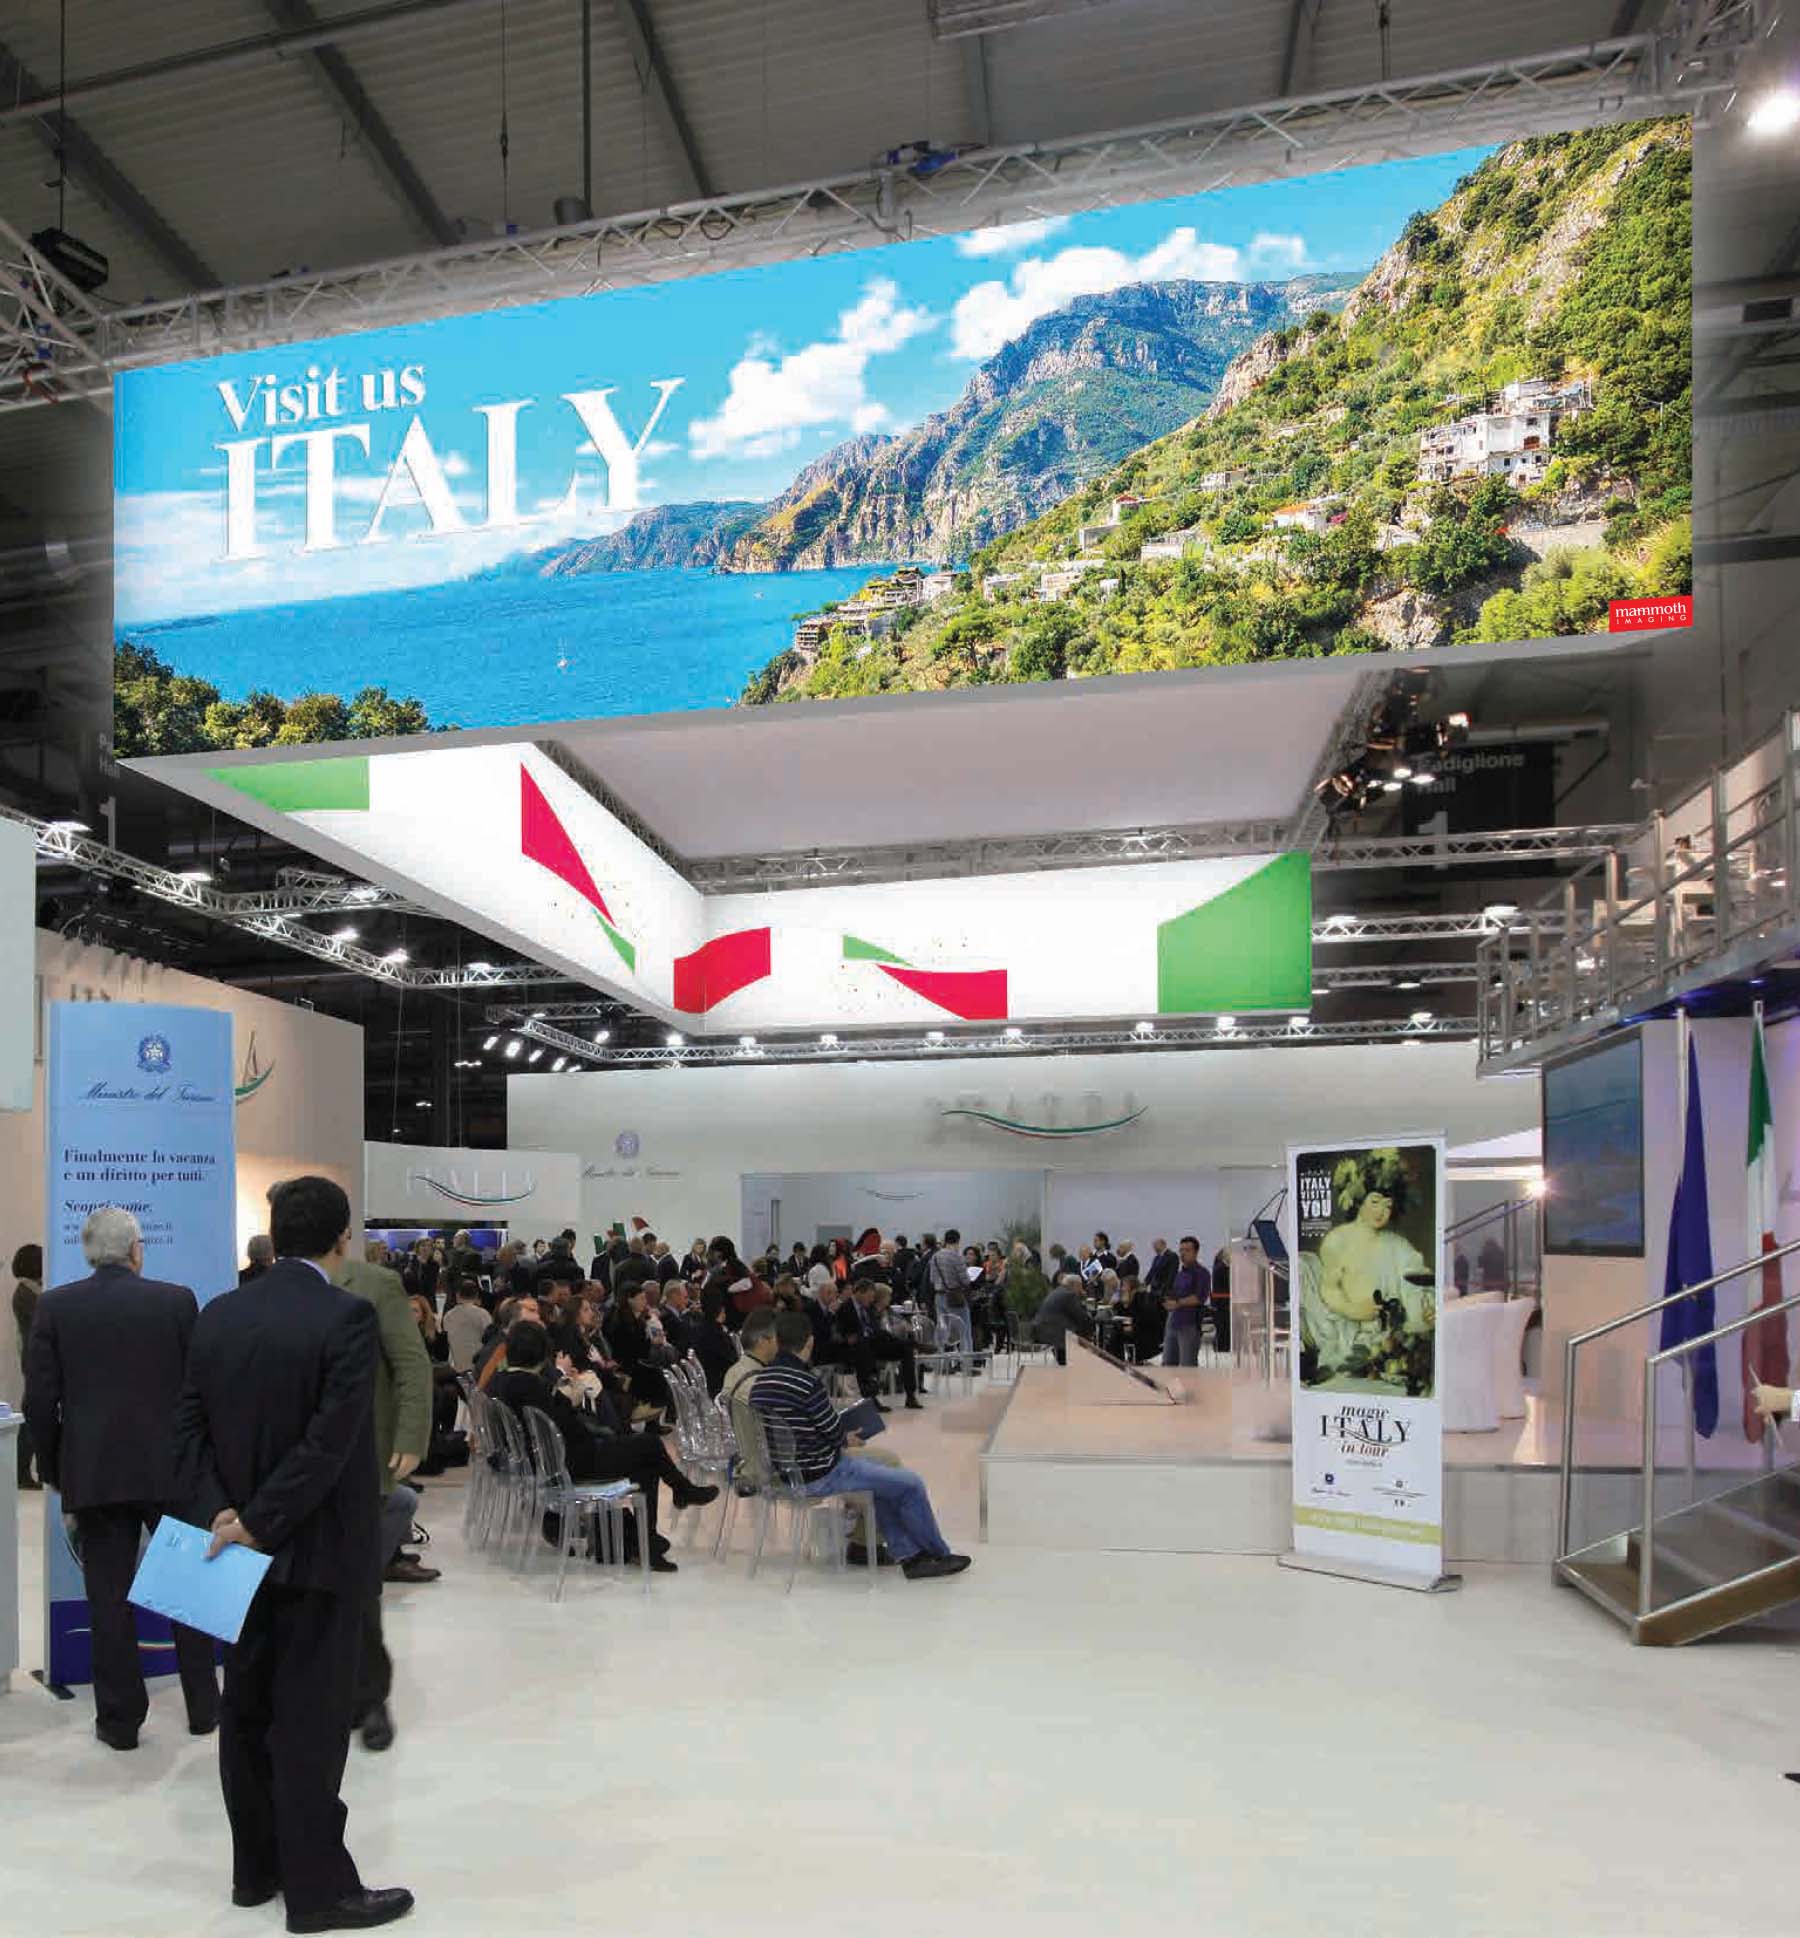 Vist us Italy SEG fabric displays